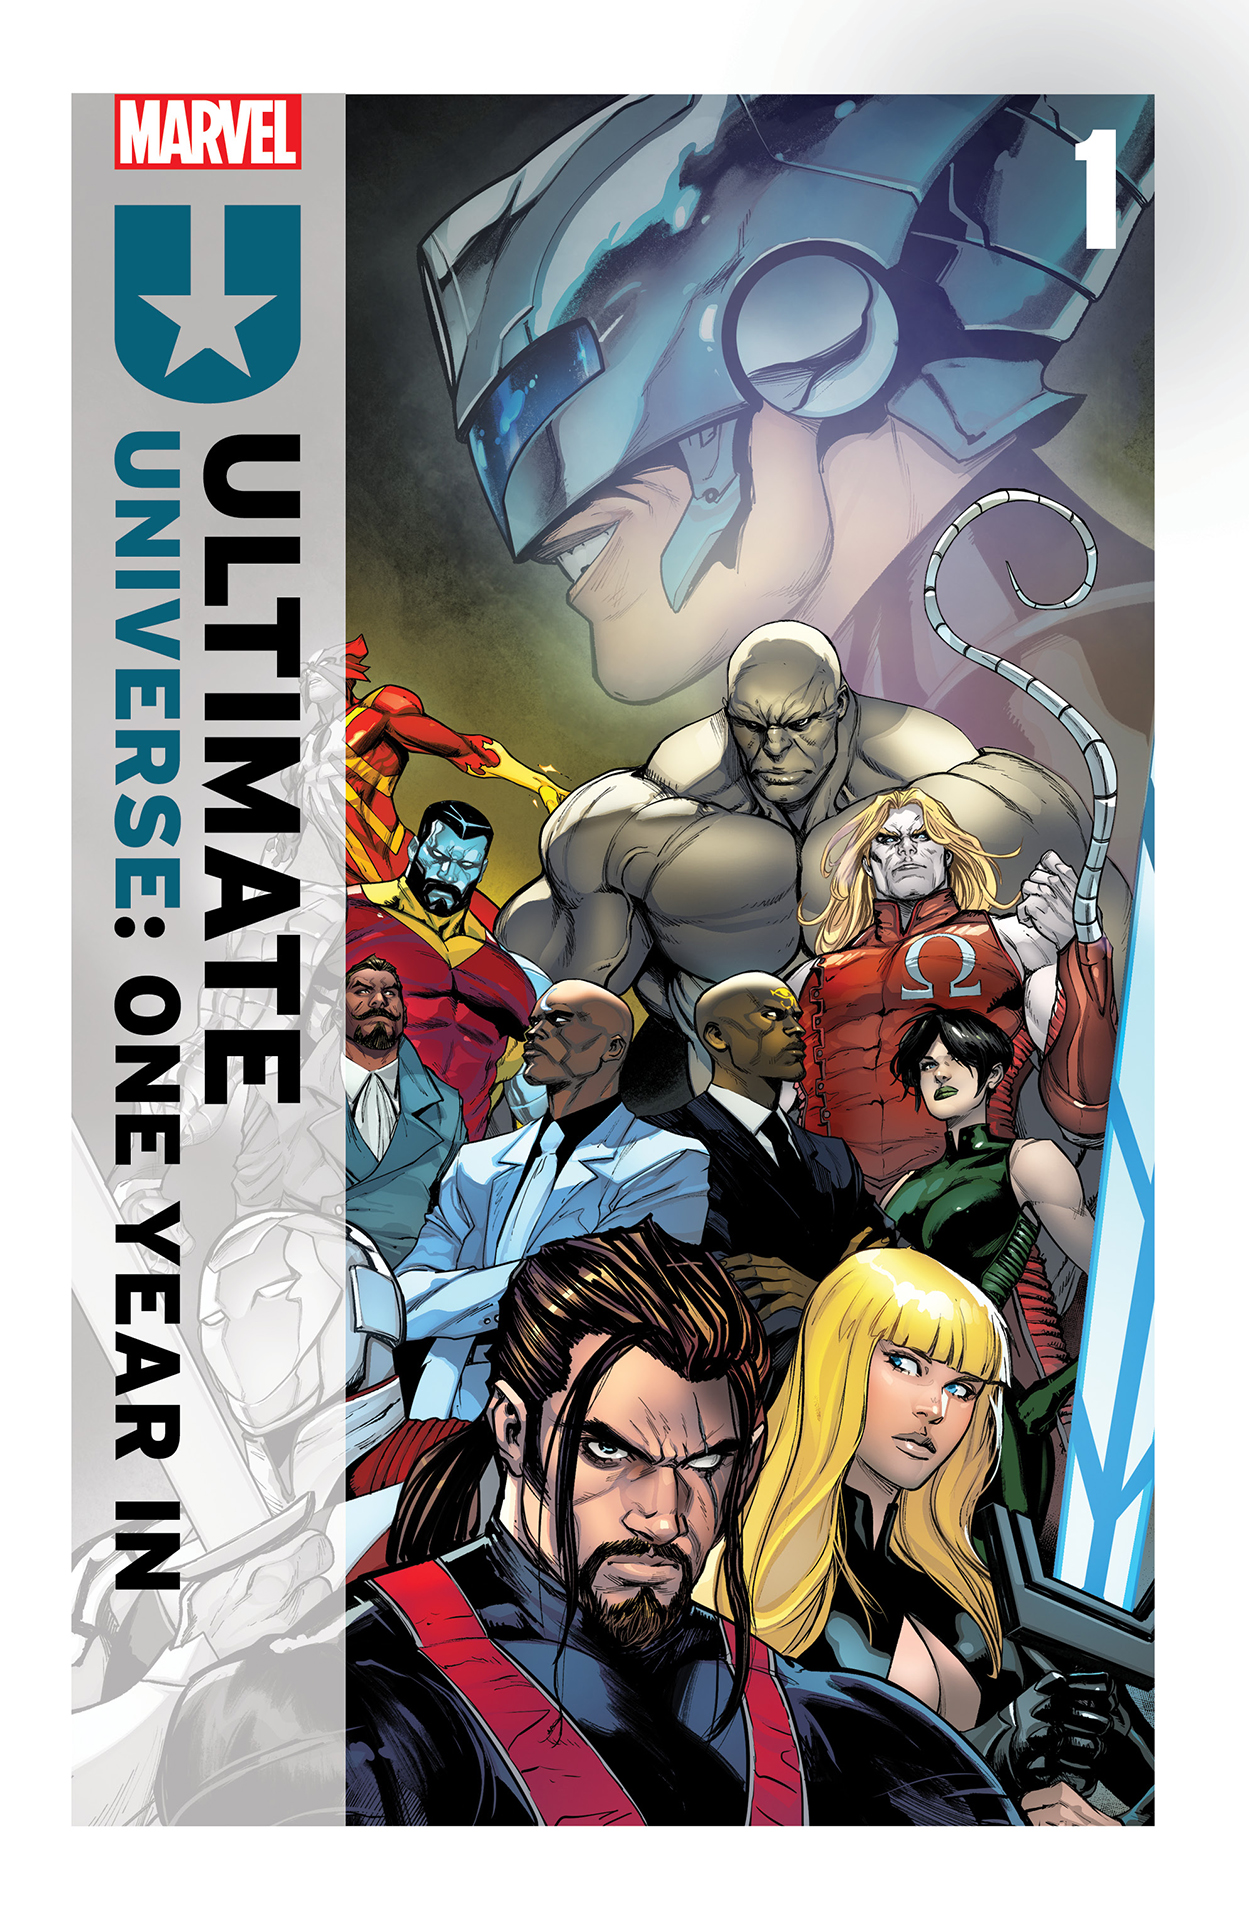 Ultimate-вселенная: Год спустя, постер № 1